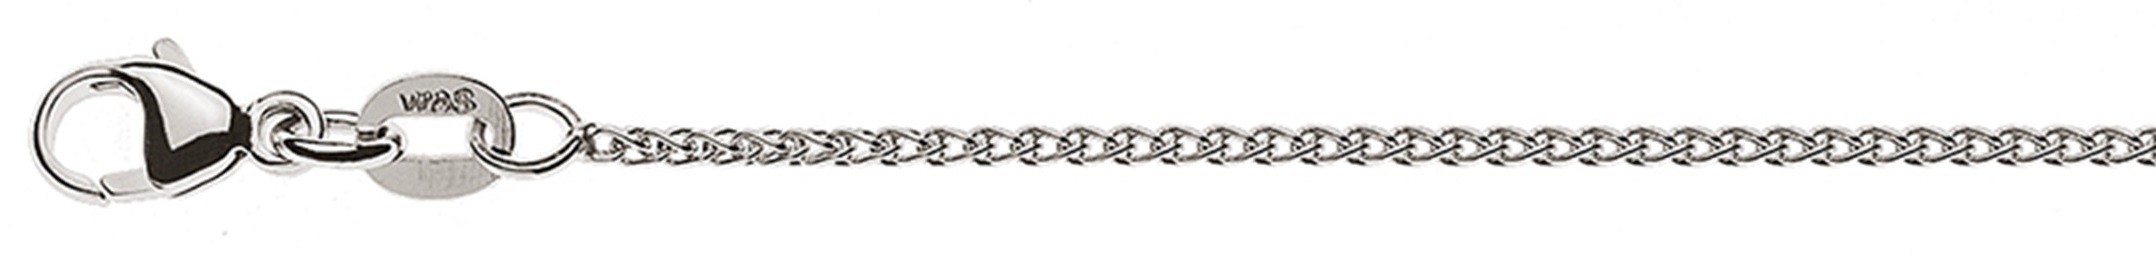 AURONOS Élégance Necklace white gold 14K cable chain 38cm 1.2mm